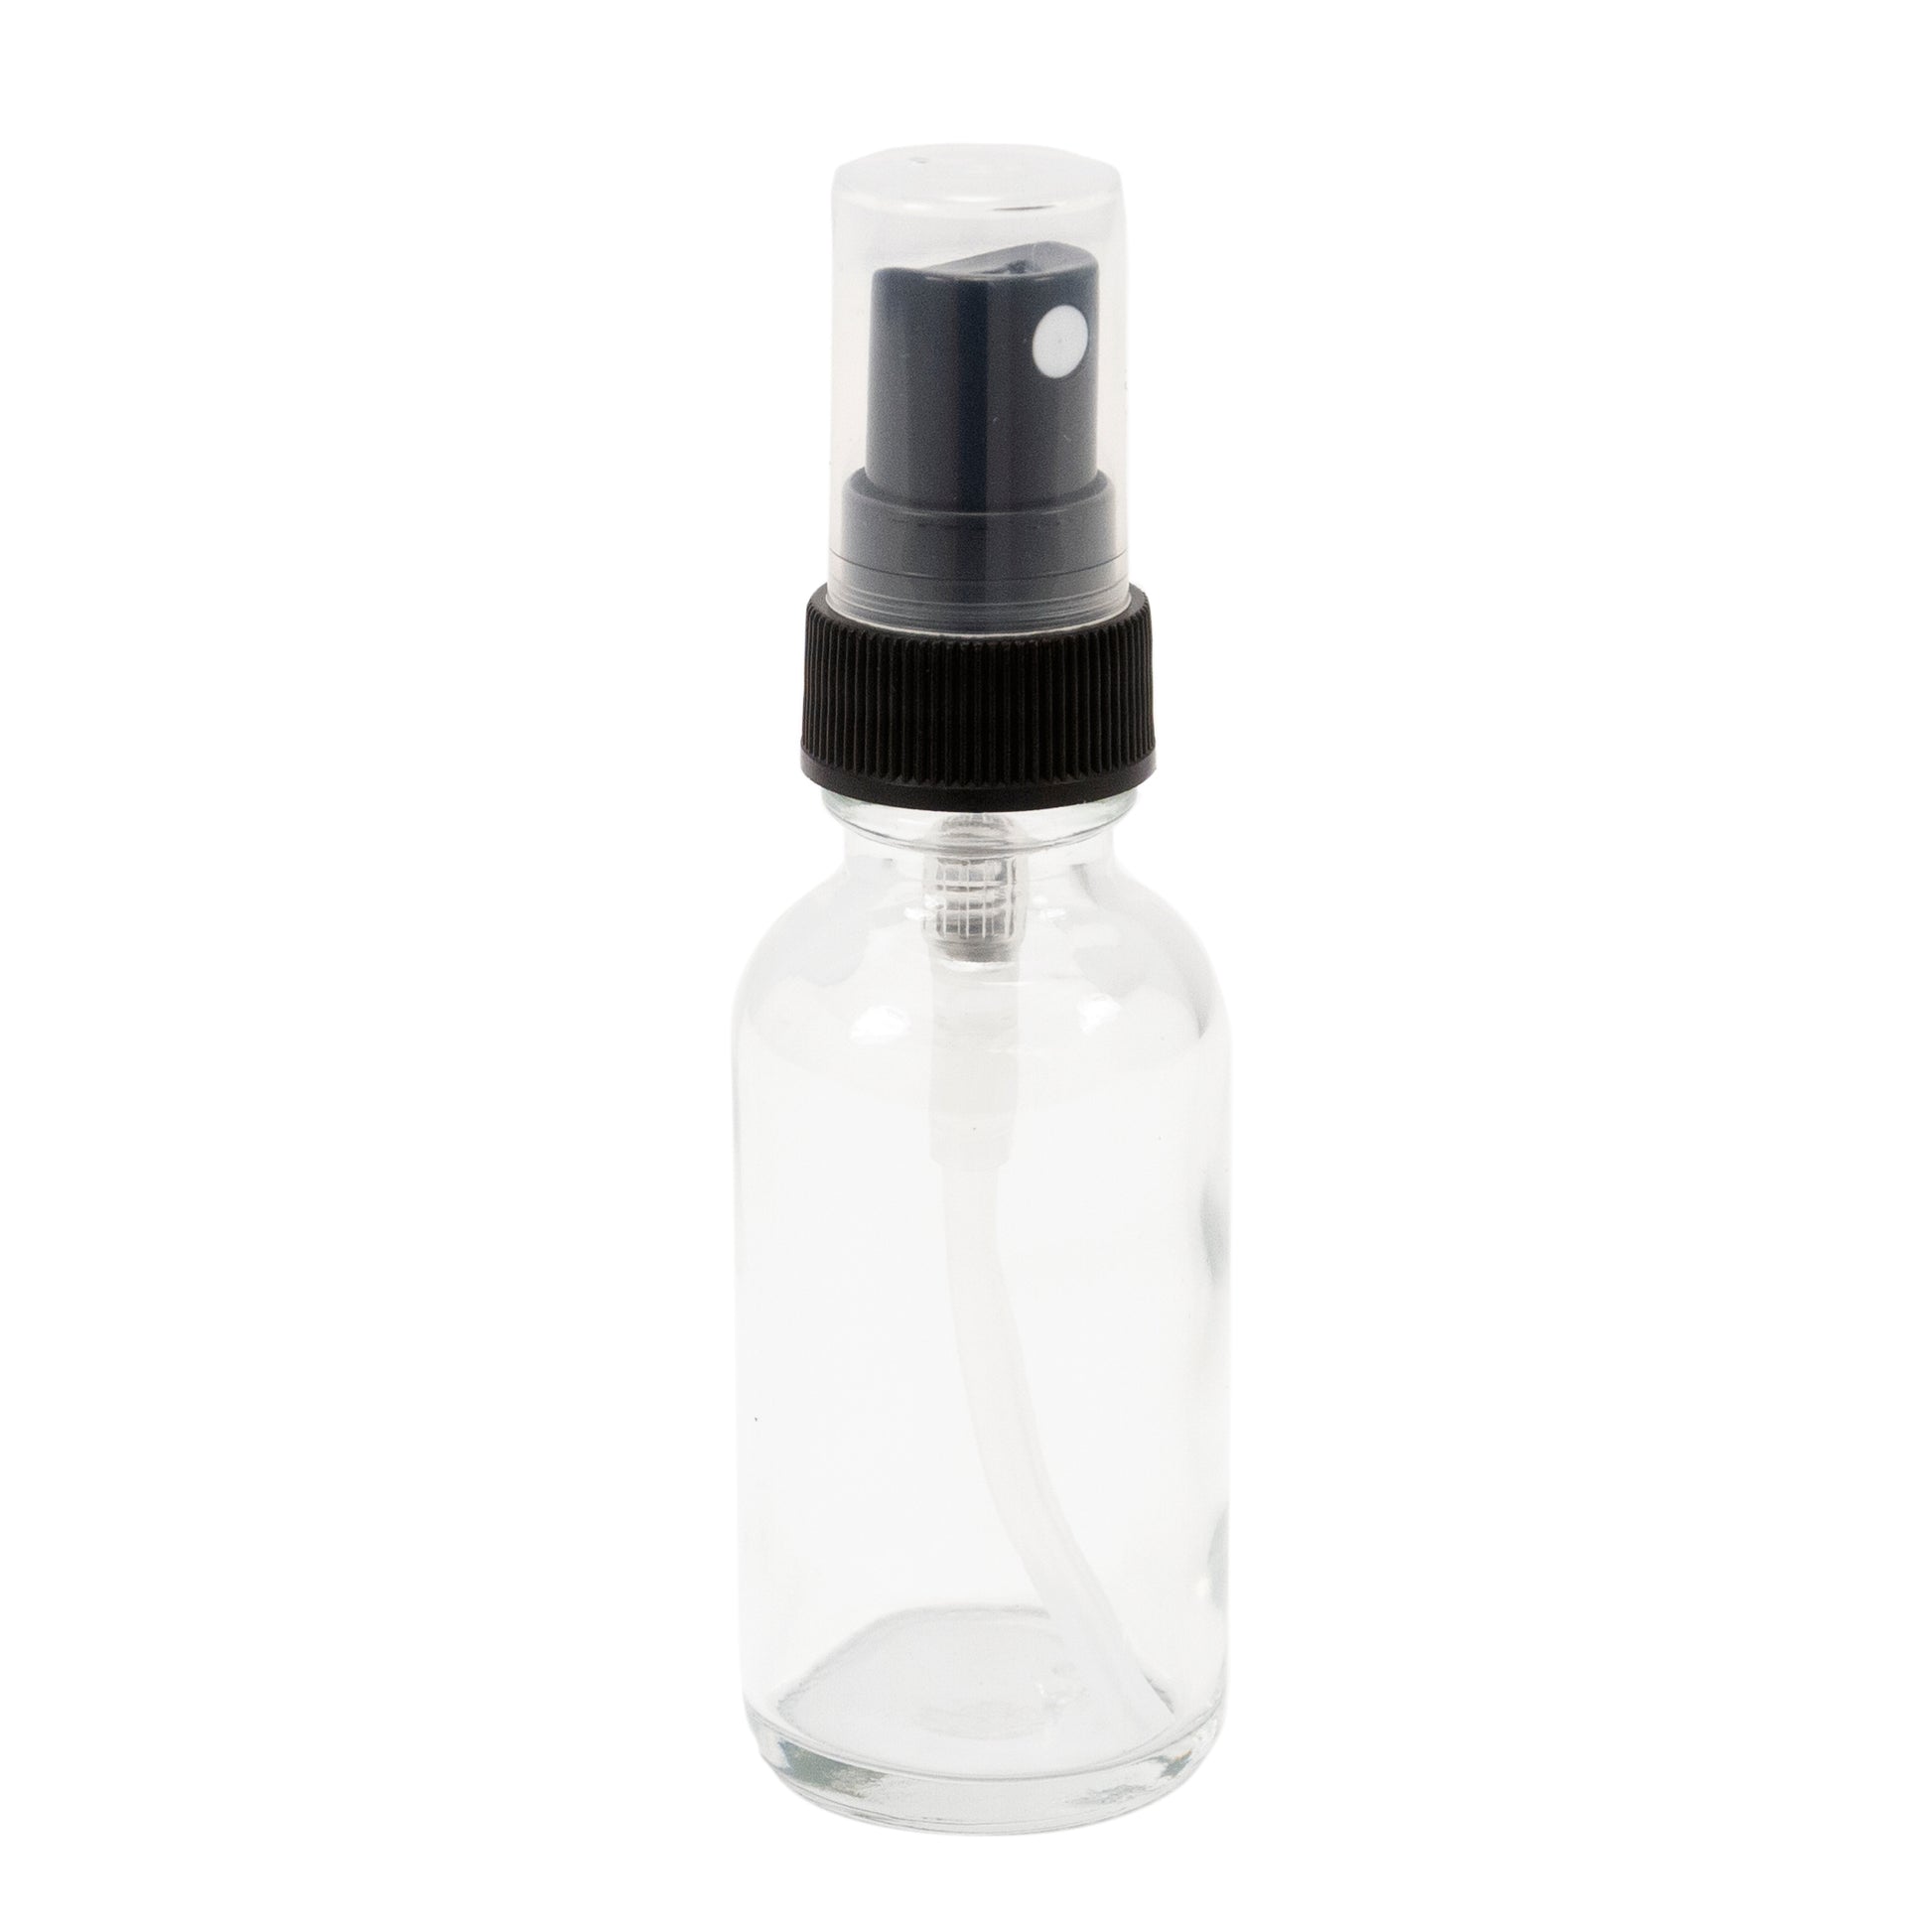 The Fine-Mist Spray Bottle